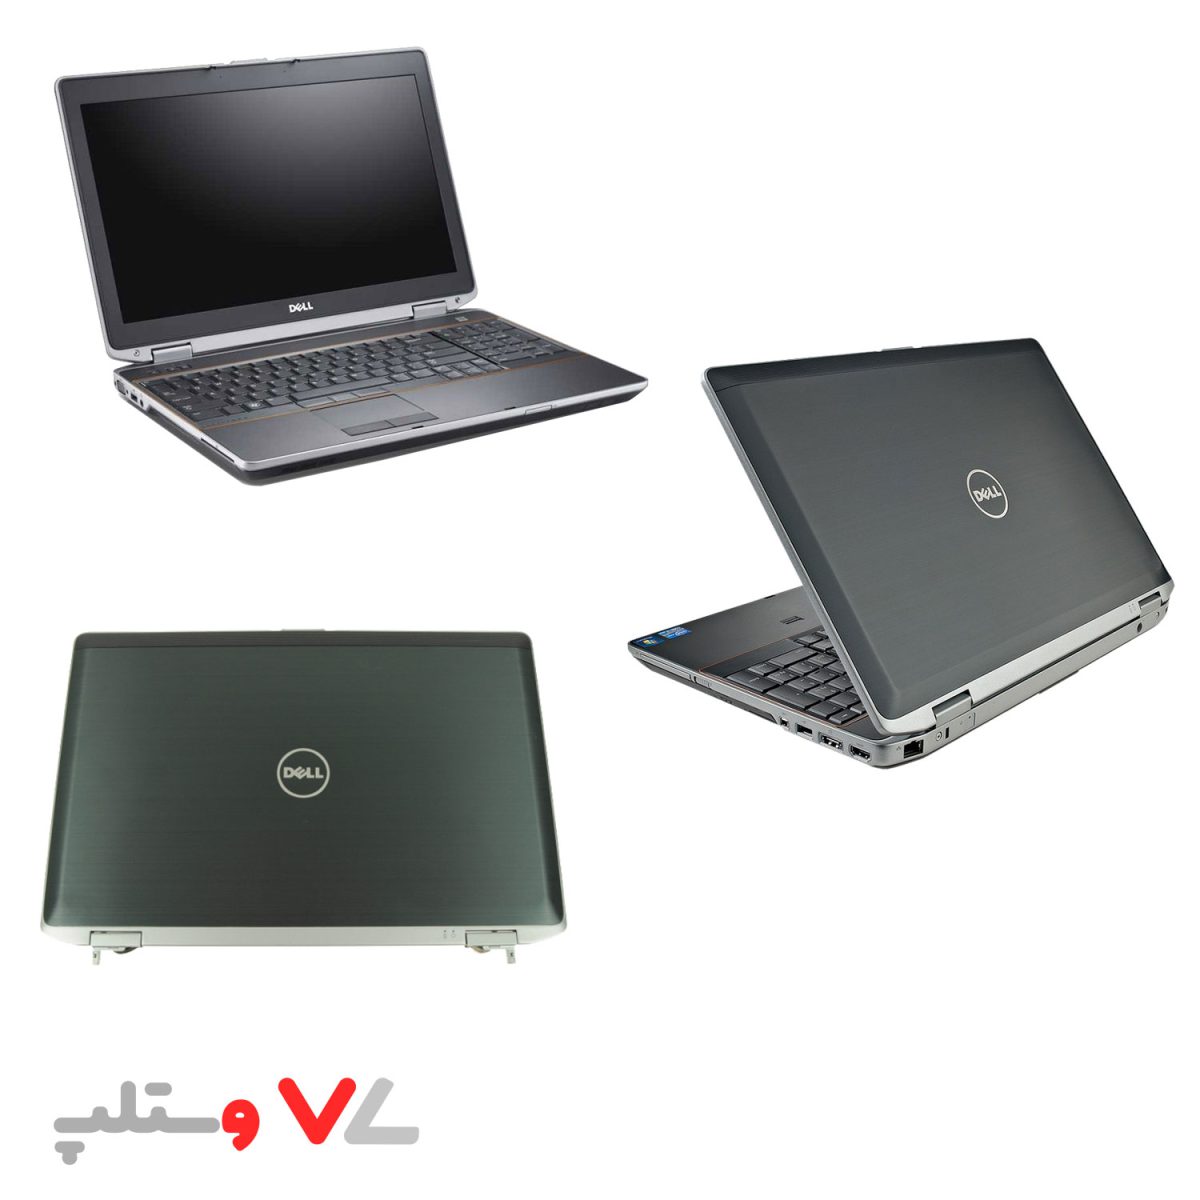 لپ تاپ استوک Dell Latitude E6520-i5-Nvidia NVS 4200m